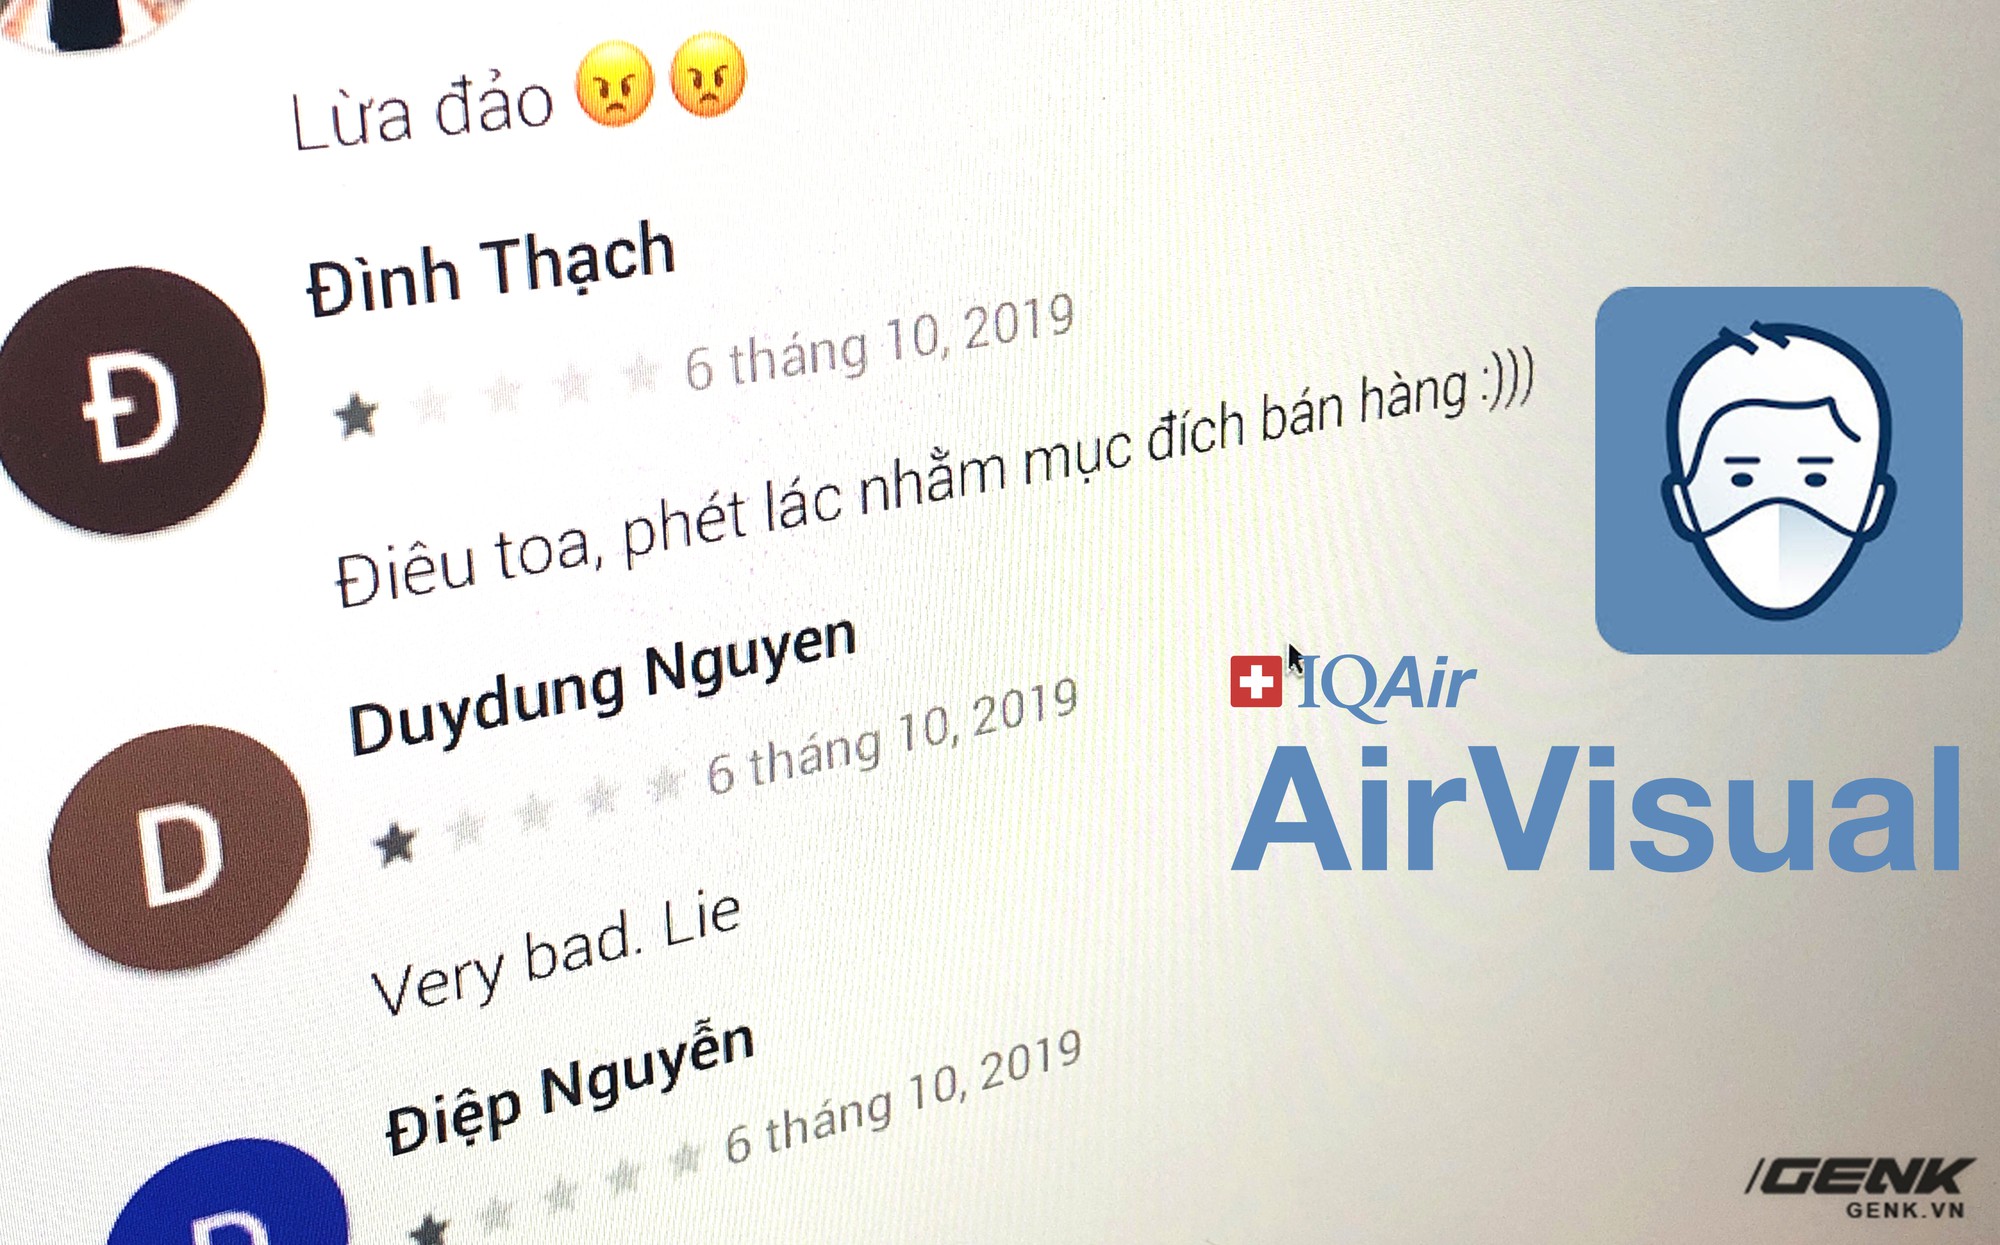 Ứng dụng dạy học bị người Việt đánh giá 1* vì thầy giáo kêu gọi tẩy chay AirVisual - Ảnh 1.